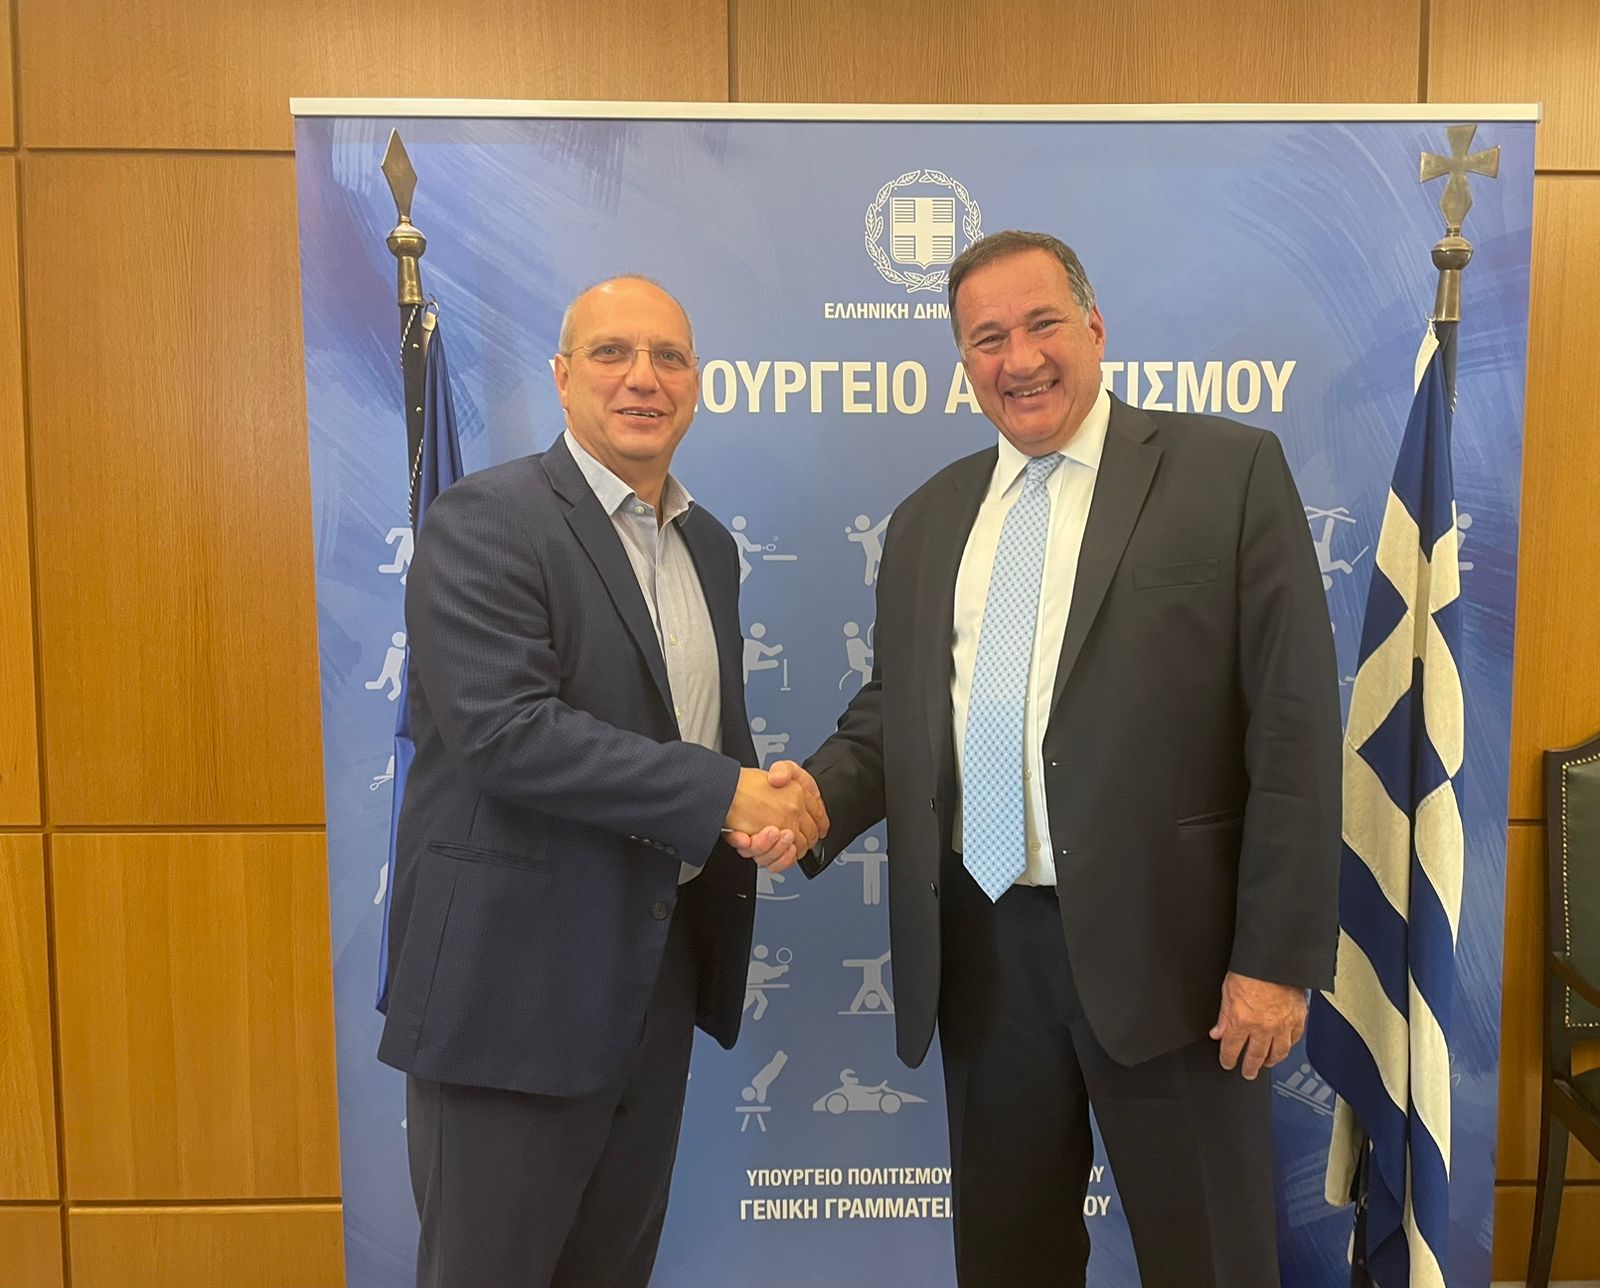 Σπύρος Καπράλος και Γιάννης Οικονόμου συζήτησαν για τον ελληνικό αθλητισμό ενόψει των Ολυμπιακών Αγώνων του 2024